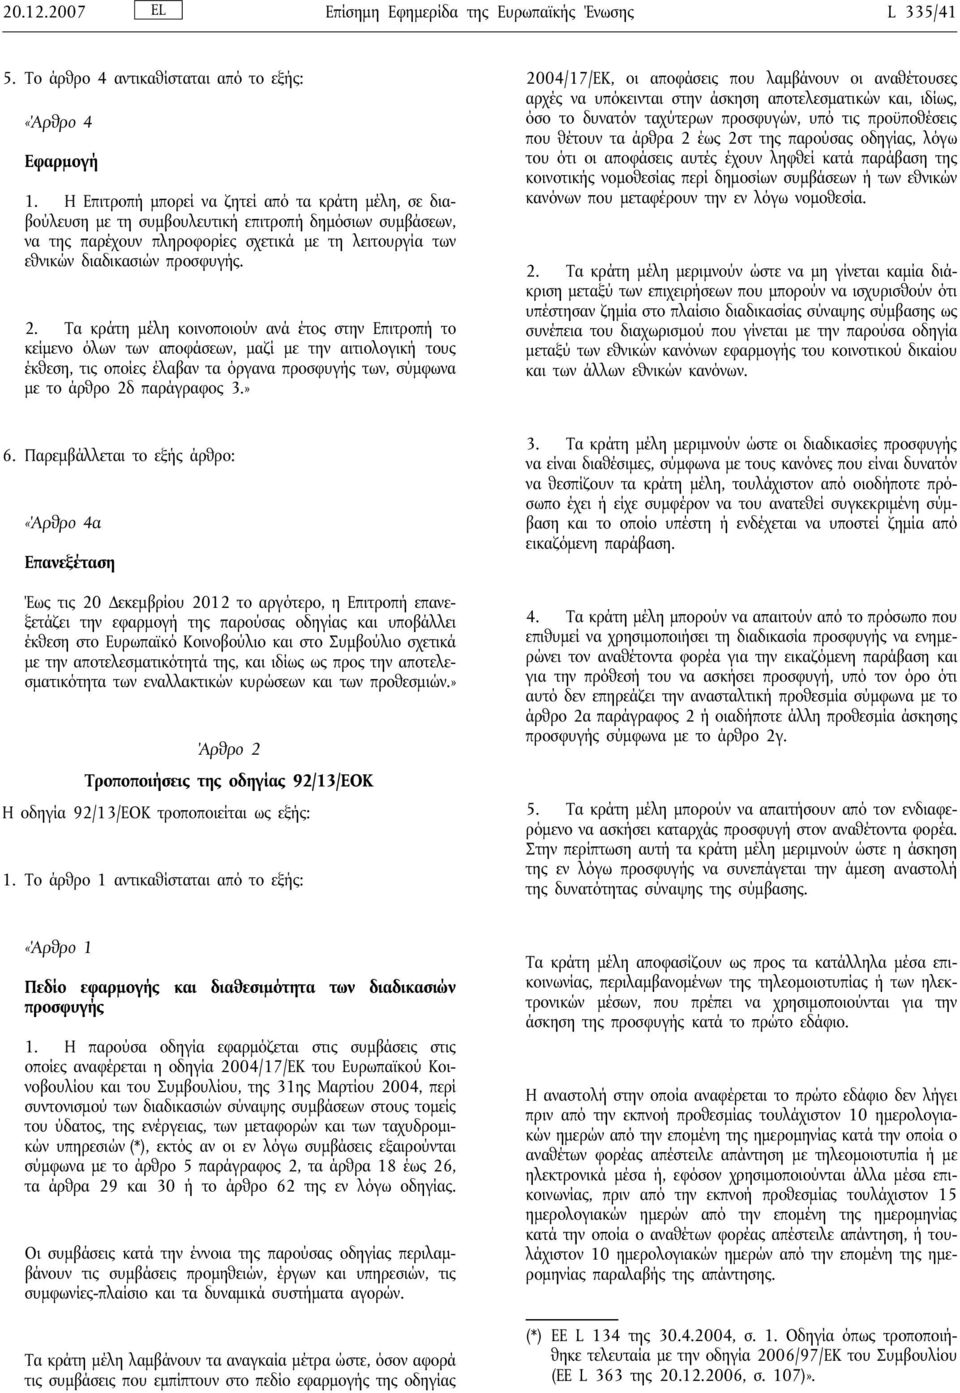 Τα κράτη μέλη κοινοποιούν ανά έτος στην Επιτροπή το κείμενο όλων των αποφάσεων, μαζί με την αιτιολογική τους έκθεση, τις οποίες έλαβαν τα όργανα προσφυγής των, σύμφωνα με το άρθρο 2δ παράγραφος 3.